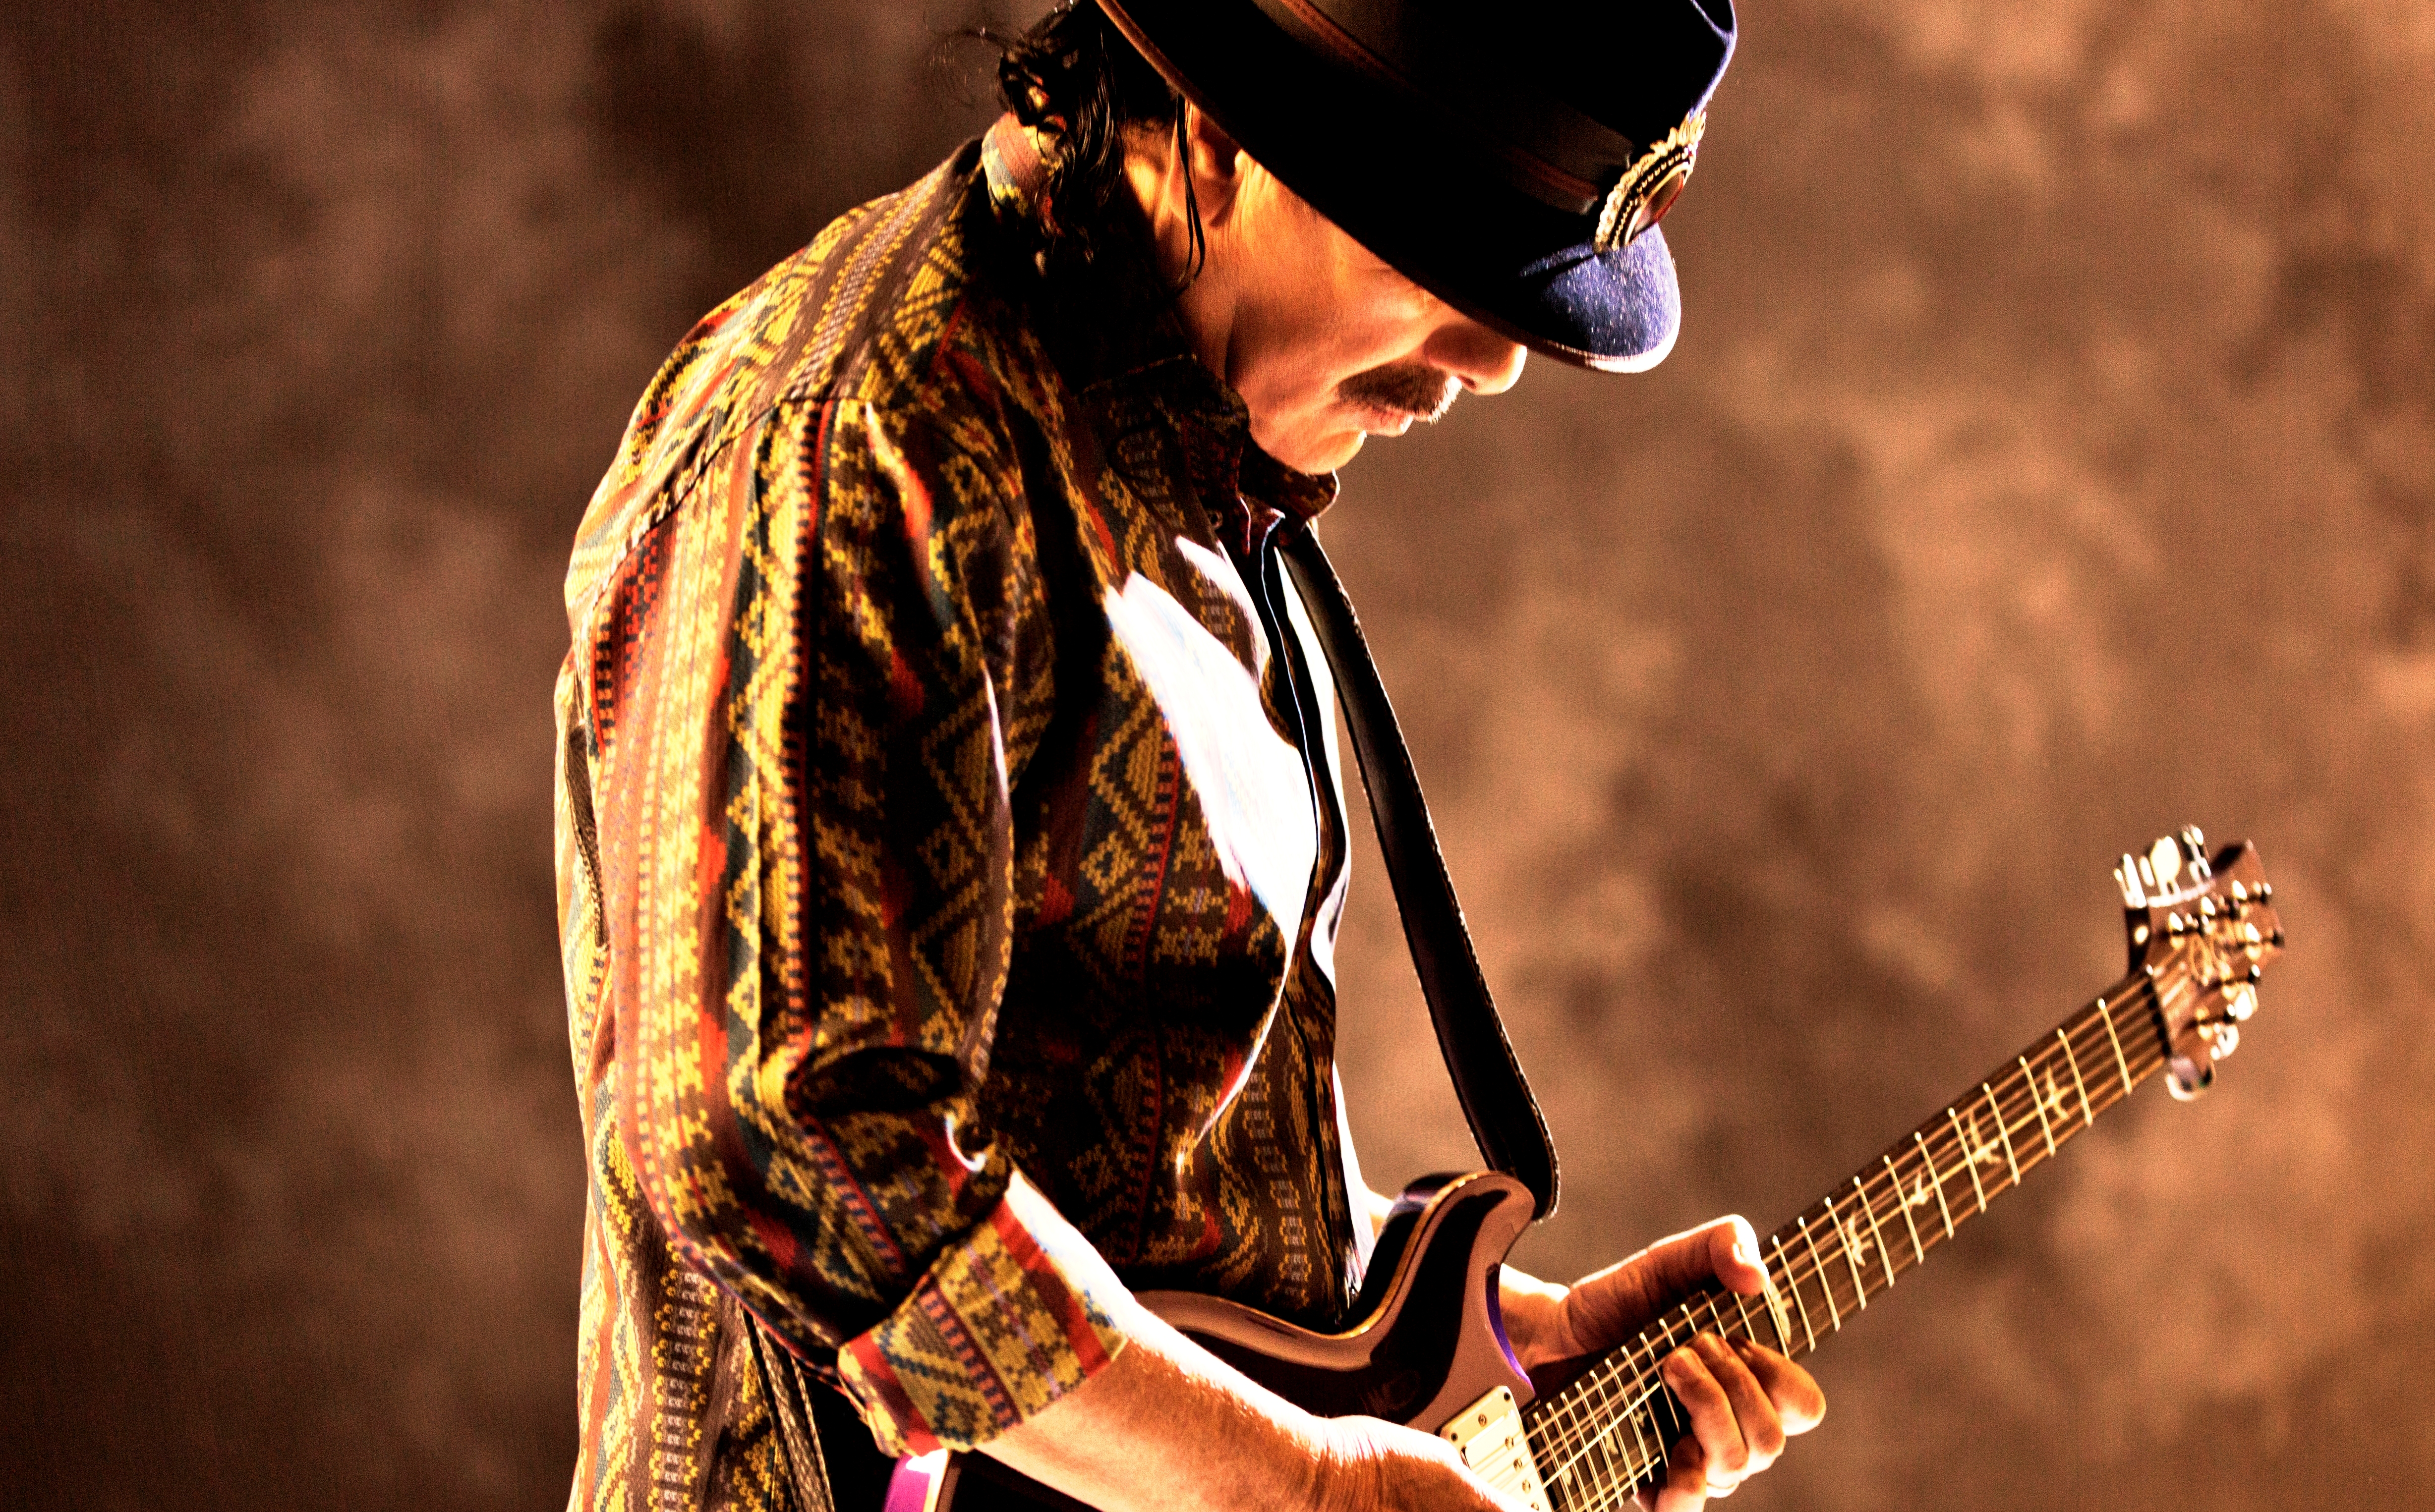 Santana Rocks Signature Sounds at the Hard Rock Live